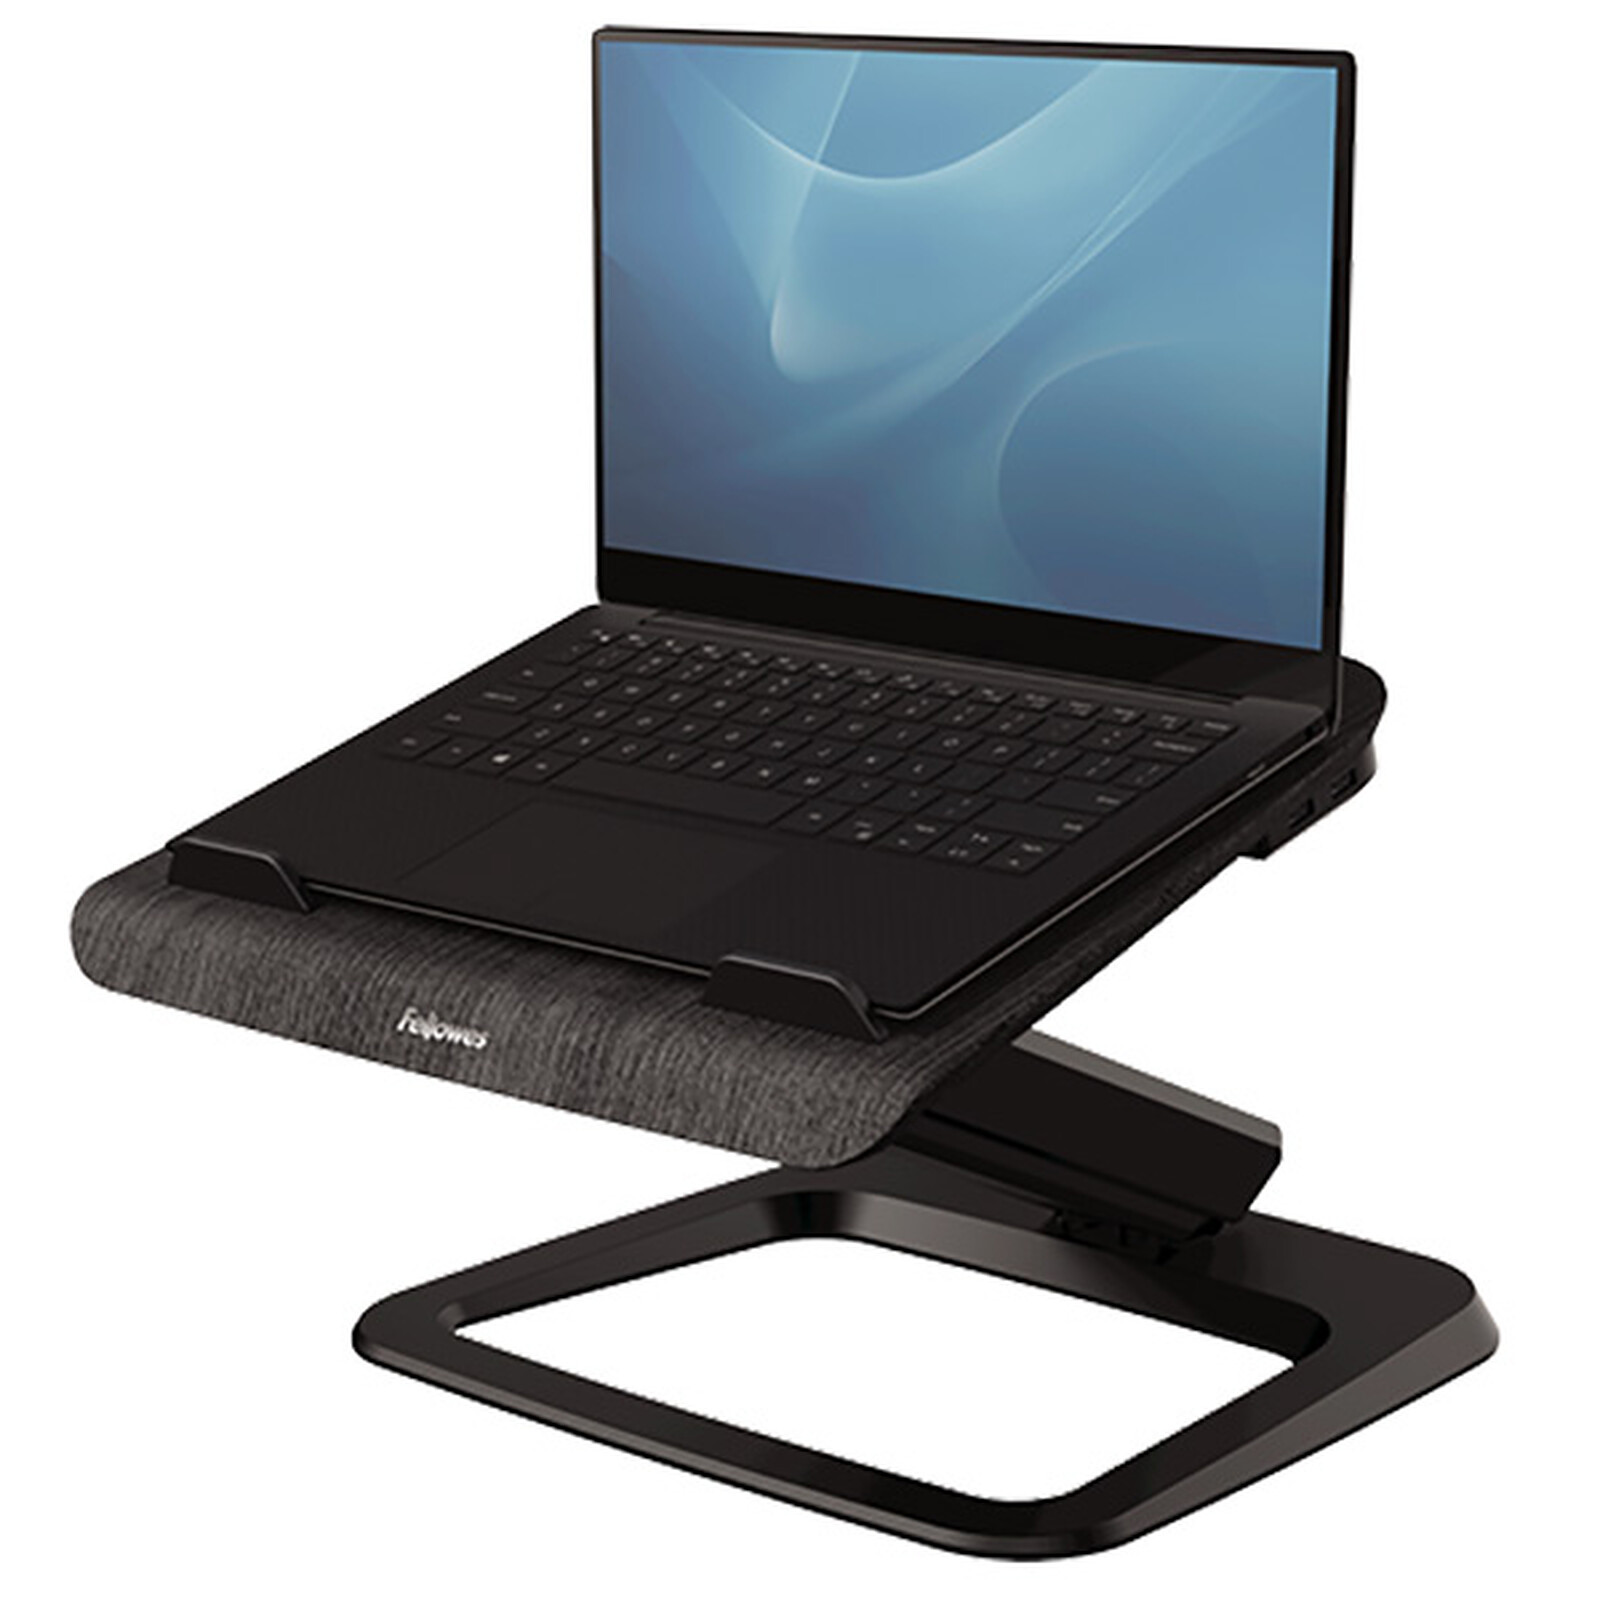 Support pour ordinateur portable Sapphire - 67x45x87 cm - Noir/blanc - Emob